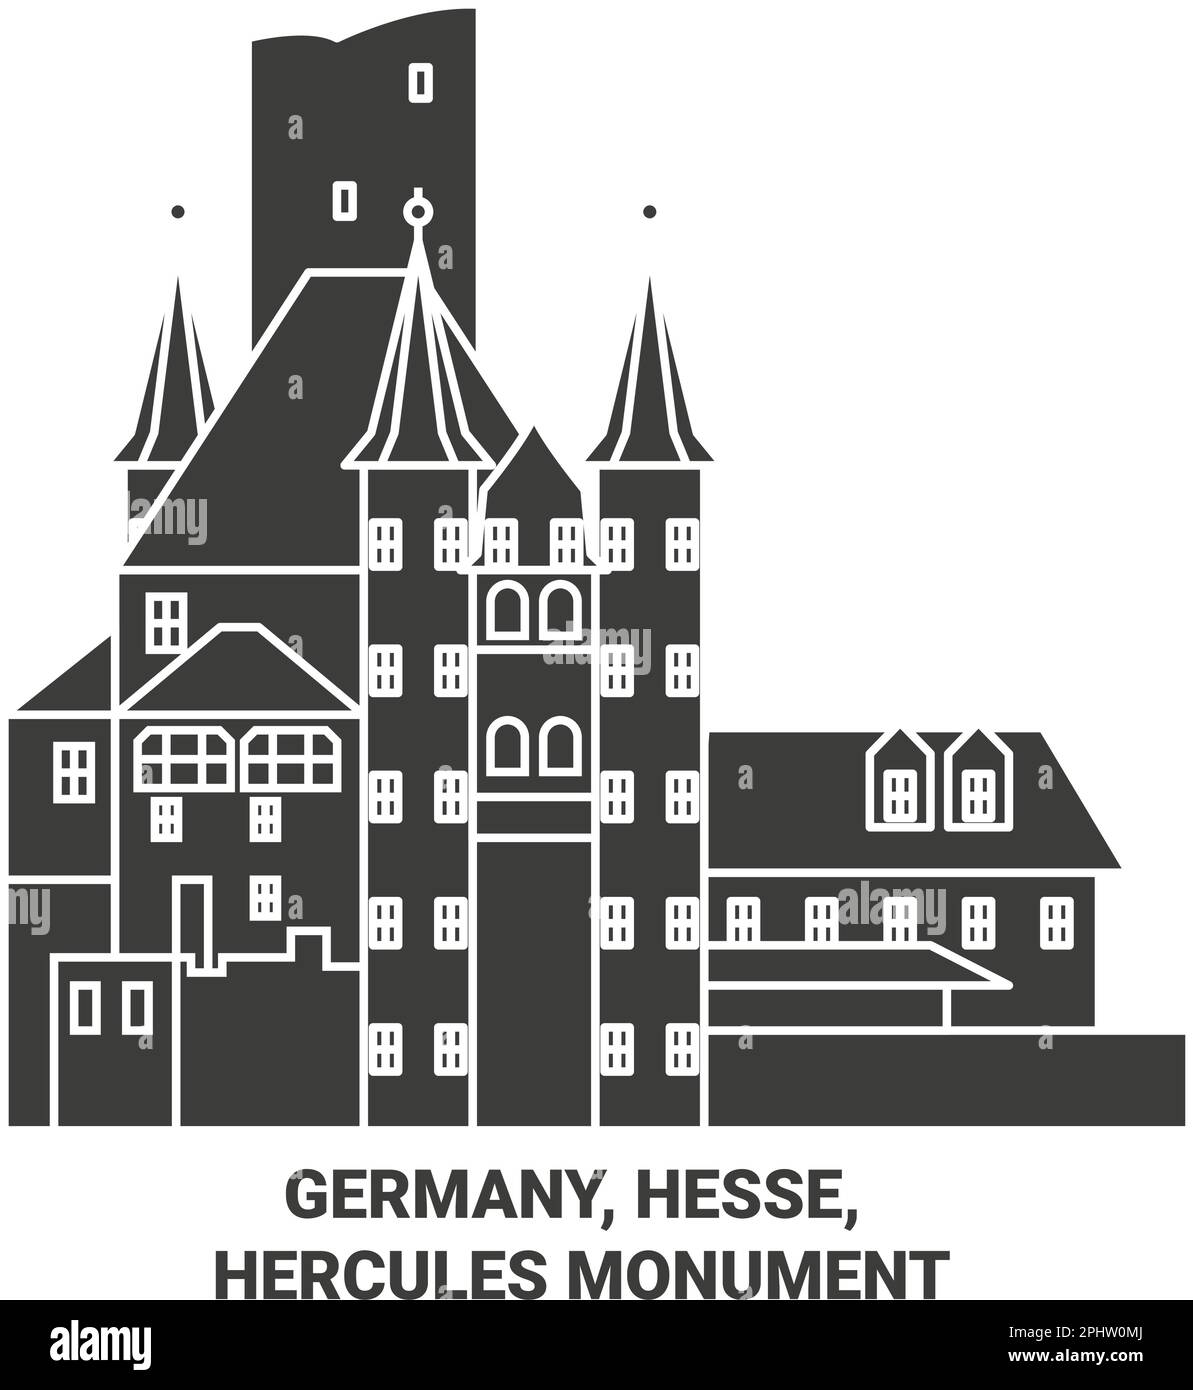 Germany, Hesse, Hercules Monument travel landmark vector illustration Stock Vector